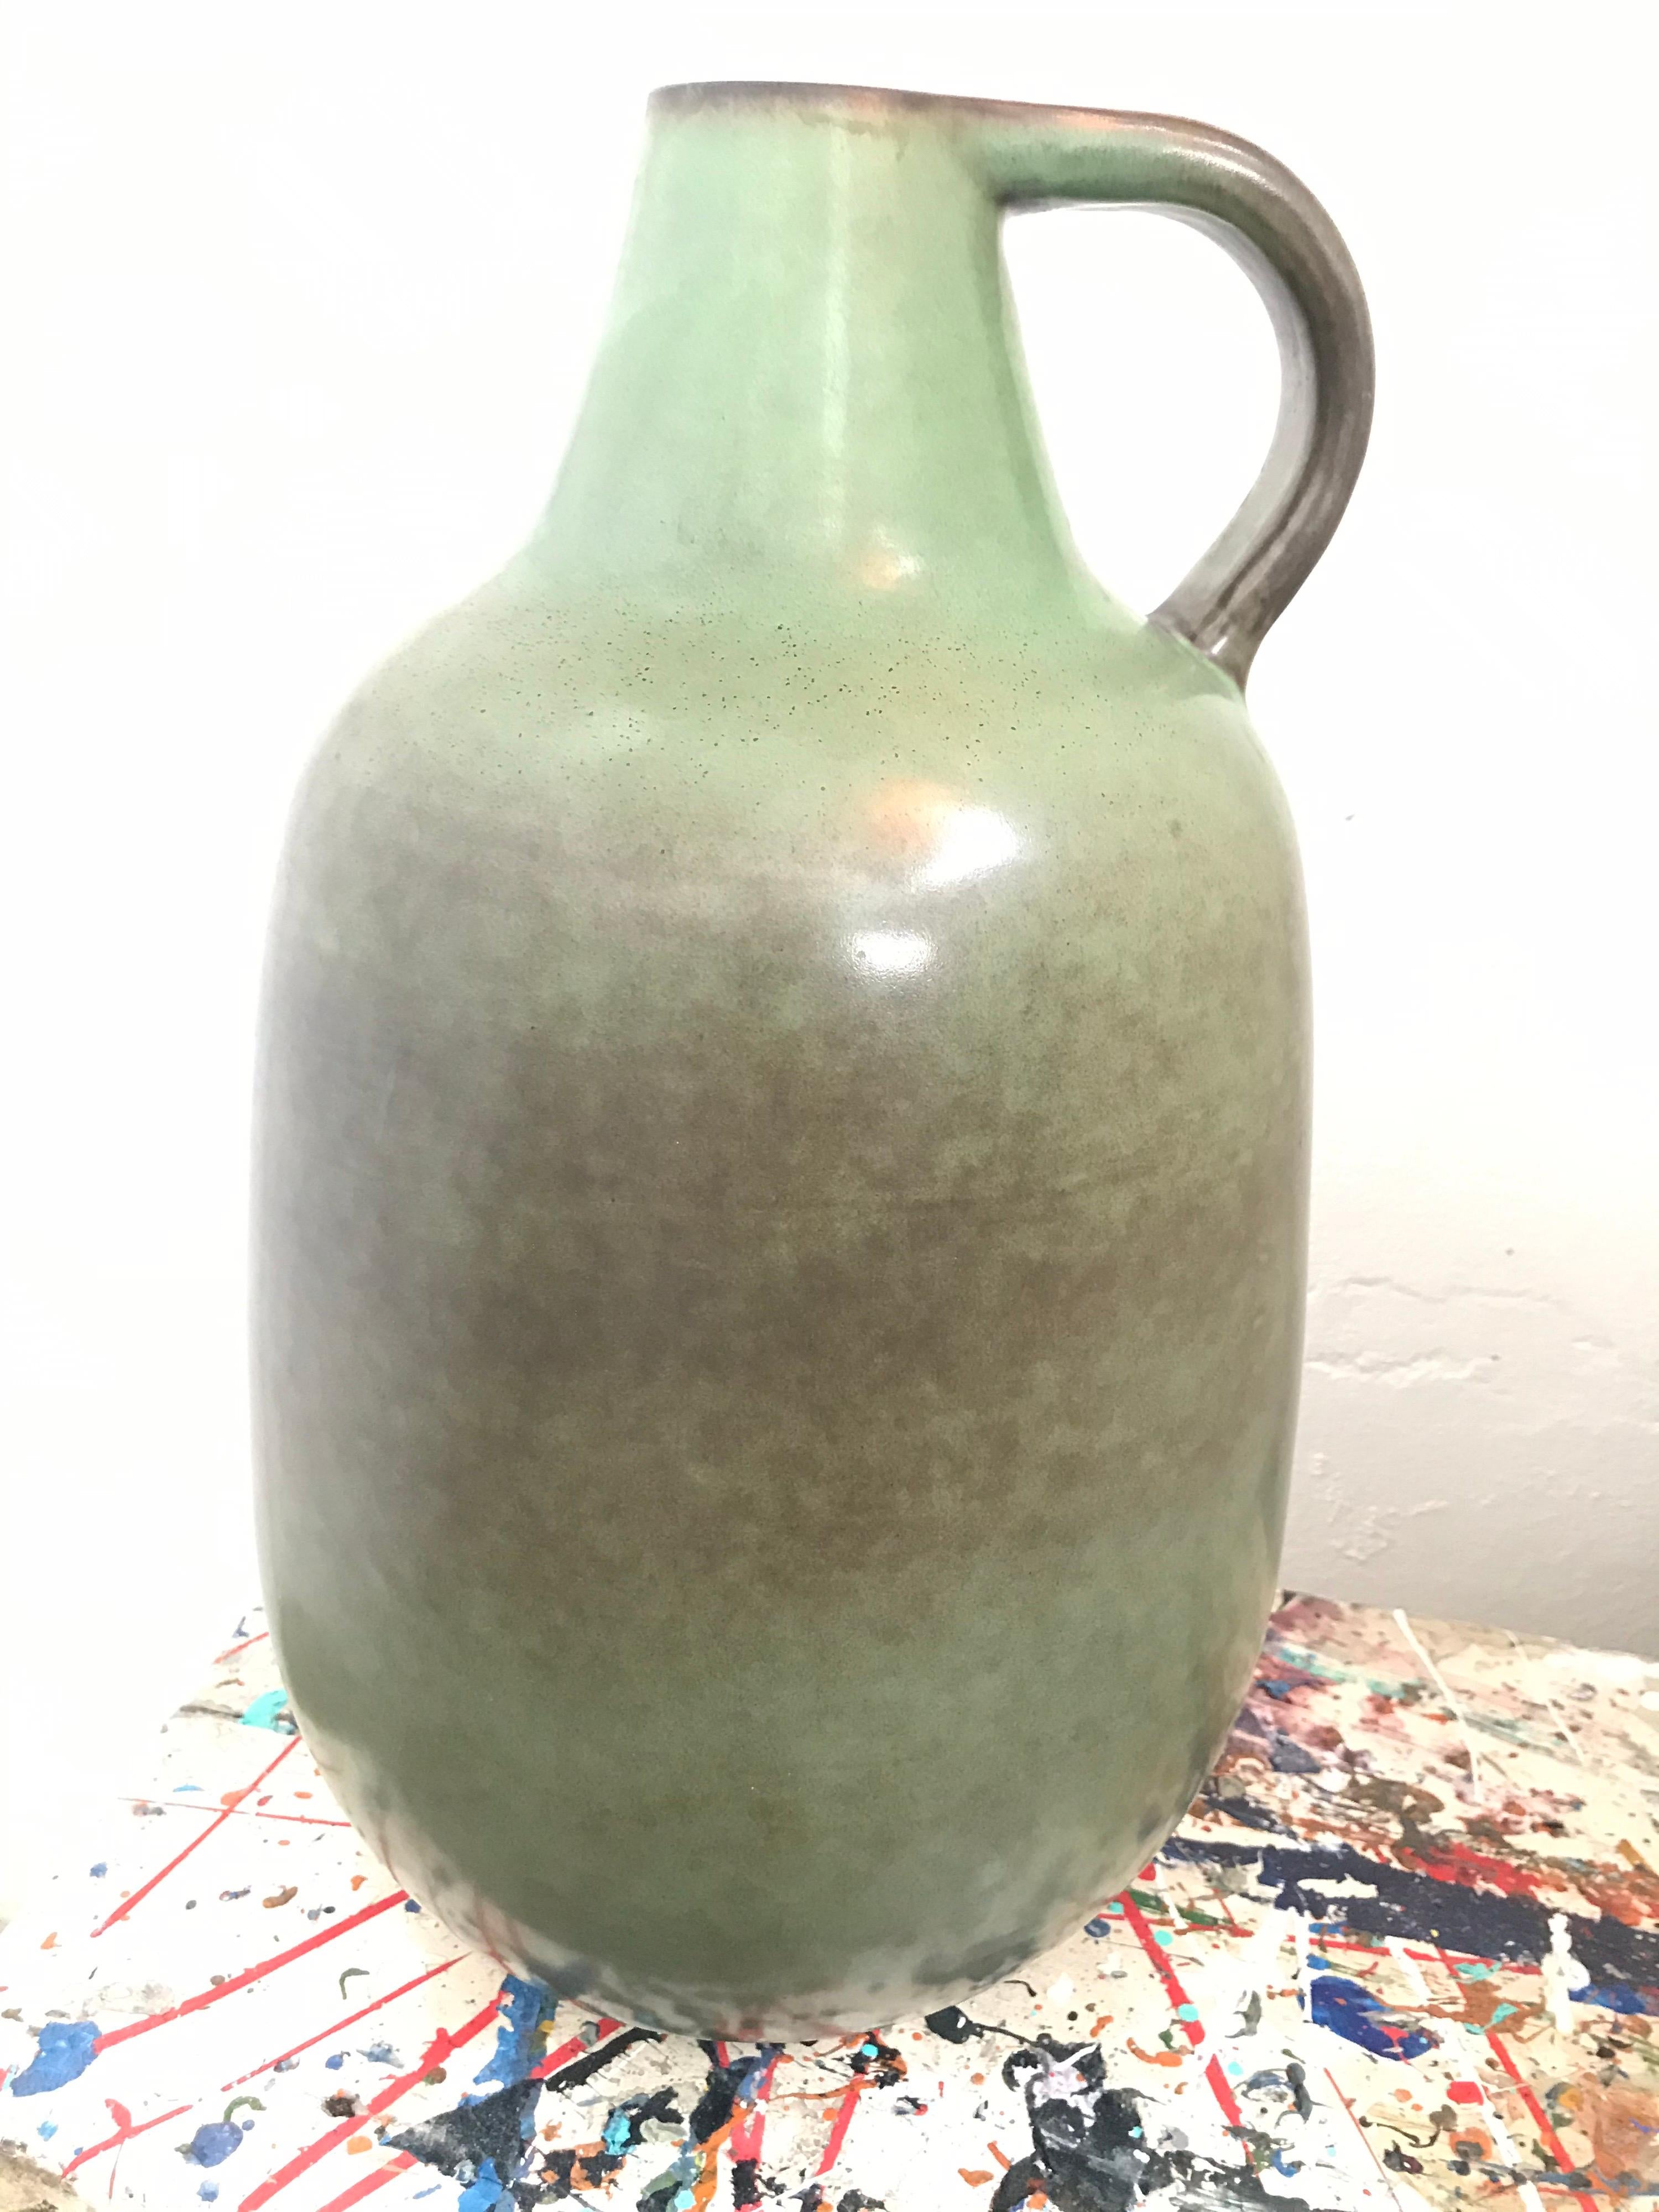 Vintage vase de sol danois Knabstrup du milieu du siècle dernier, avec une belle glaçure verte.
En excellent état, sans fissures ni éclats, et toujours avec le Label d'origine sur la base.
Knabstrup est une petite ville ferroviaire, avec une